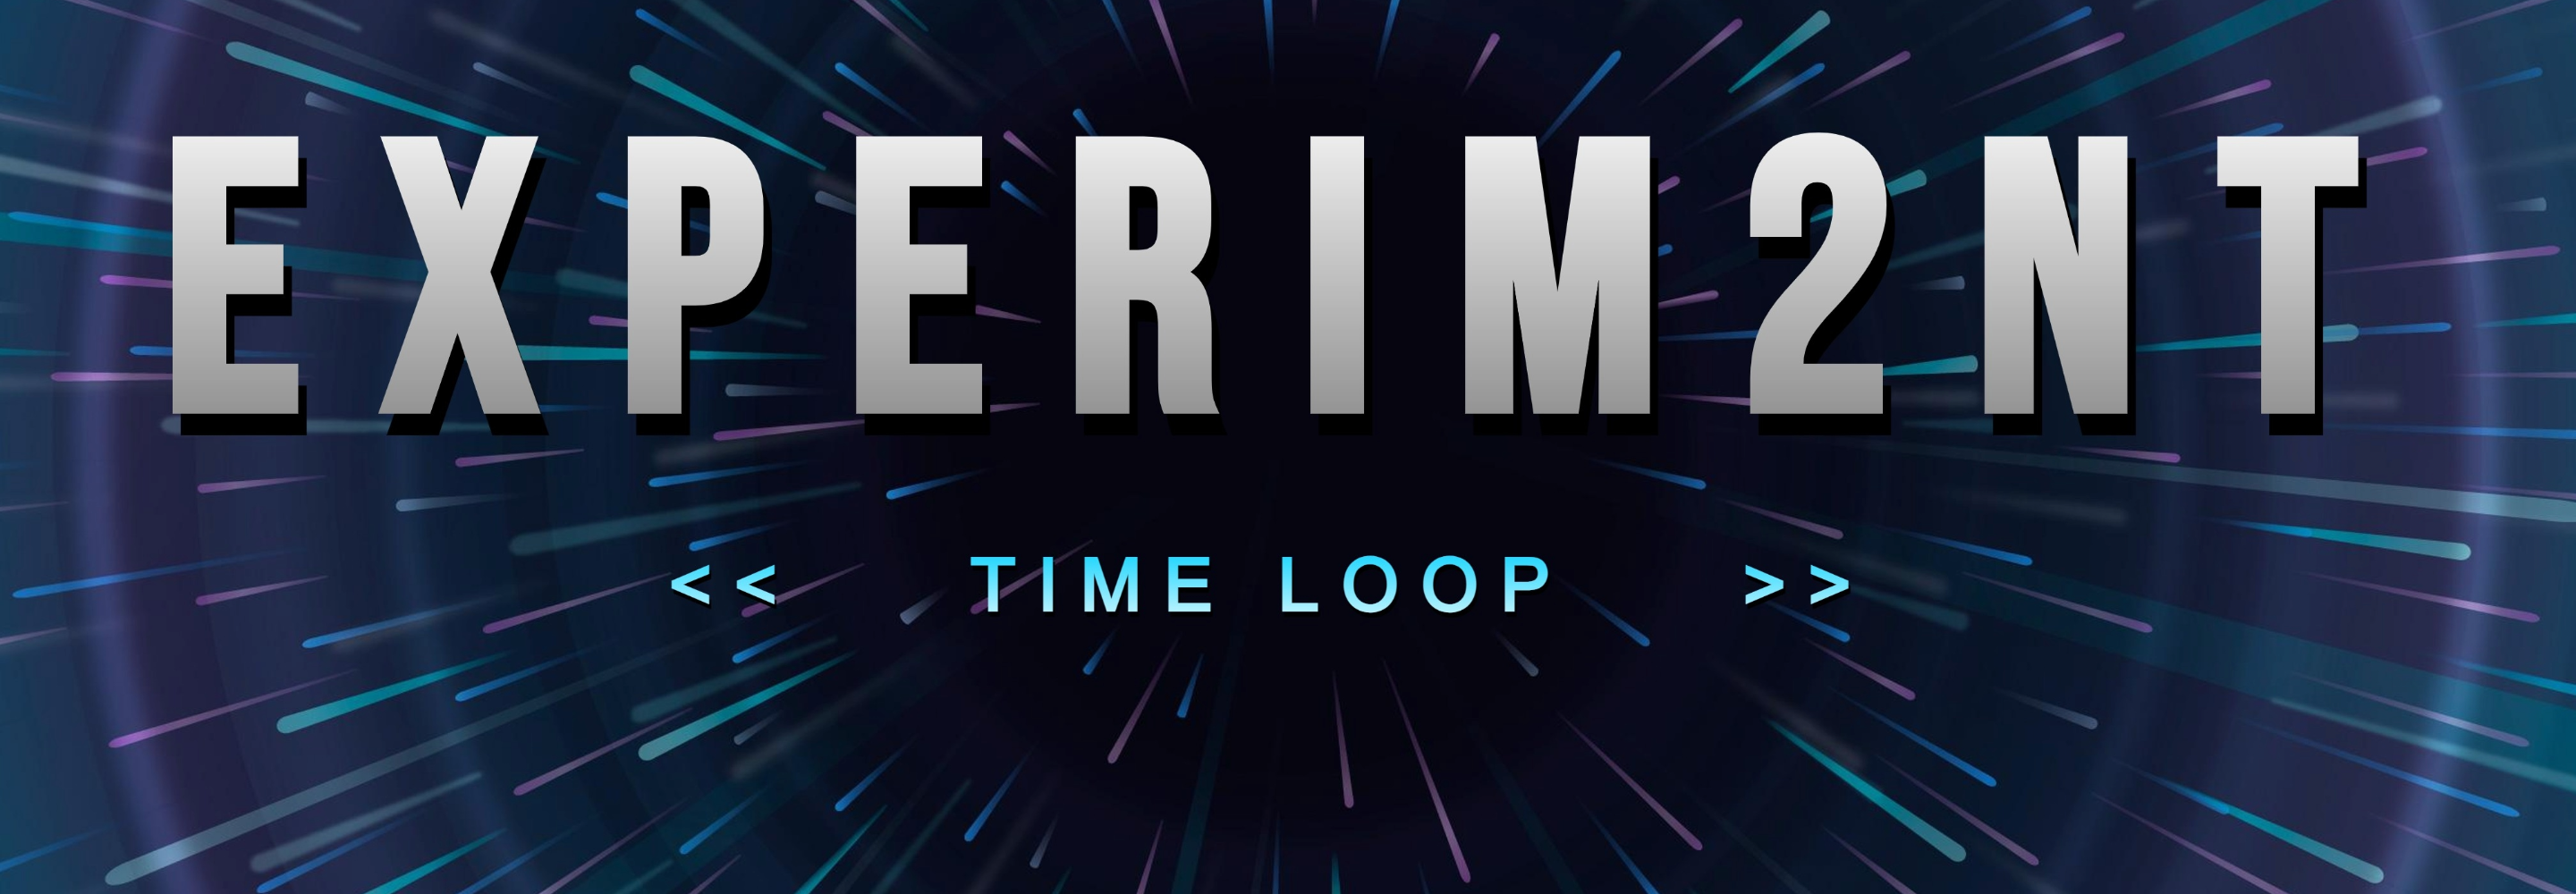 EXPERIM2NT: The Time Loop (Demo)